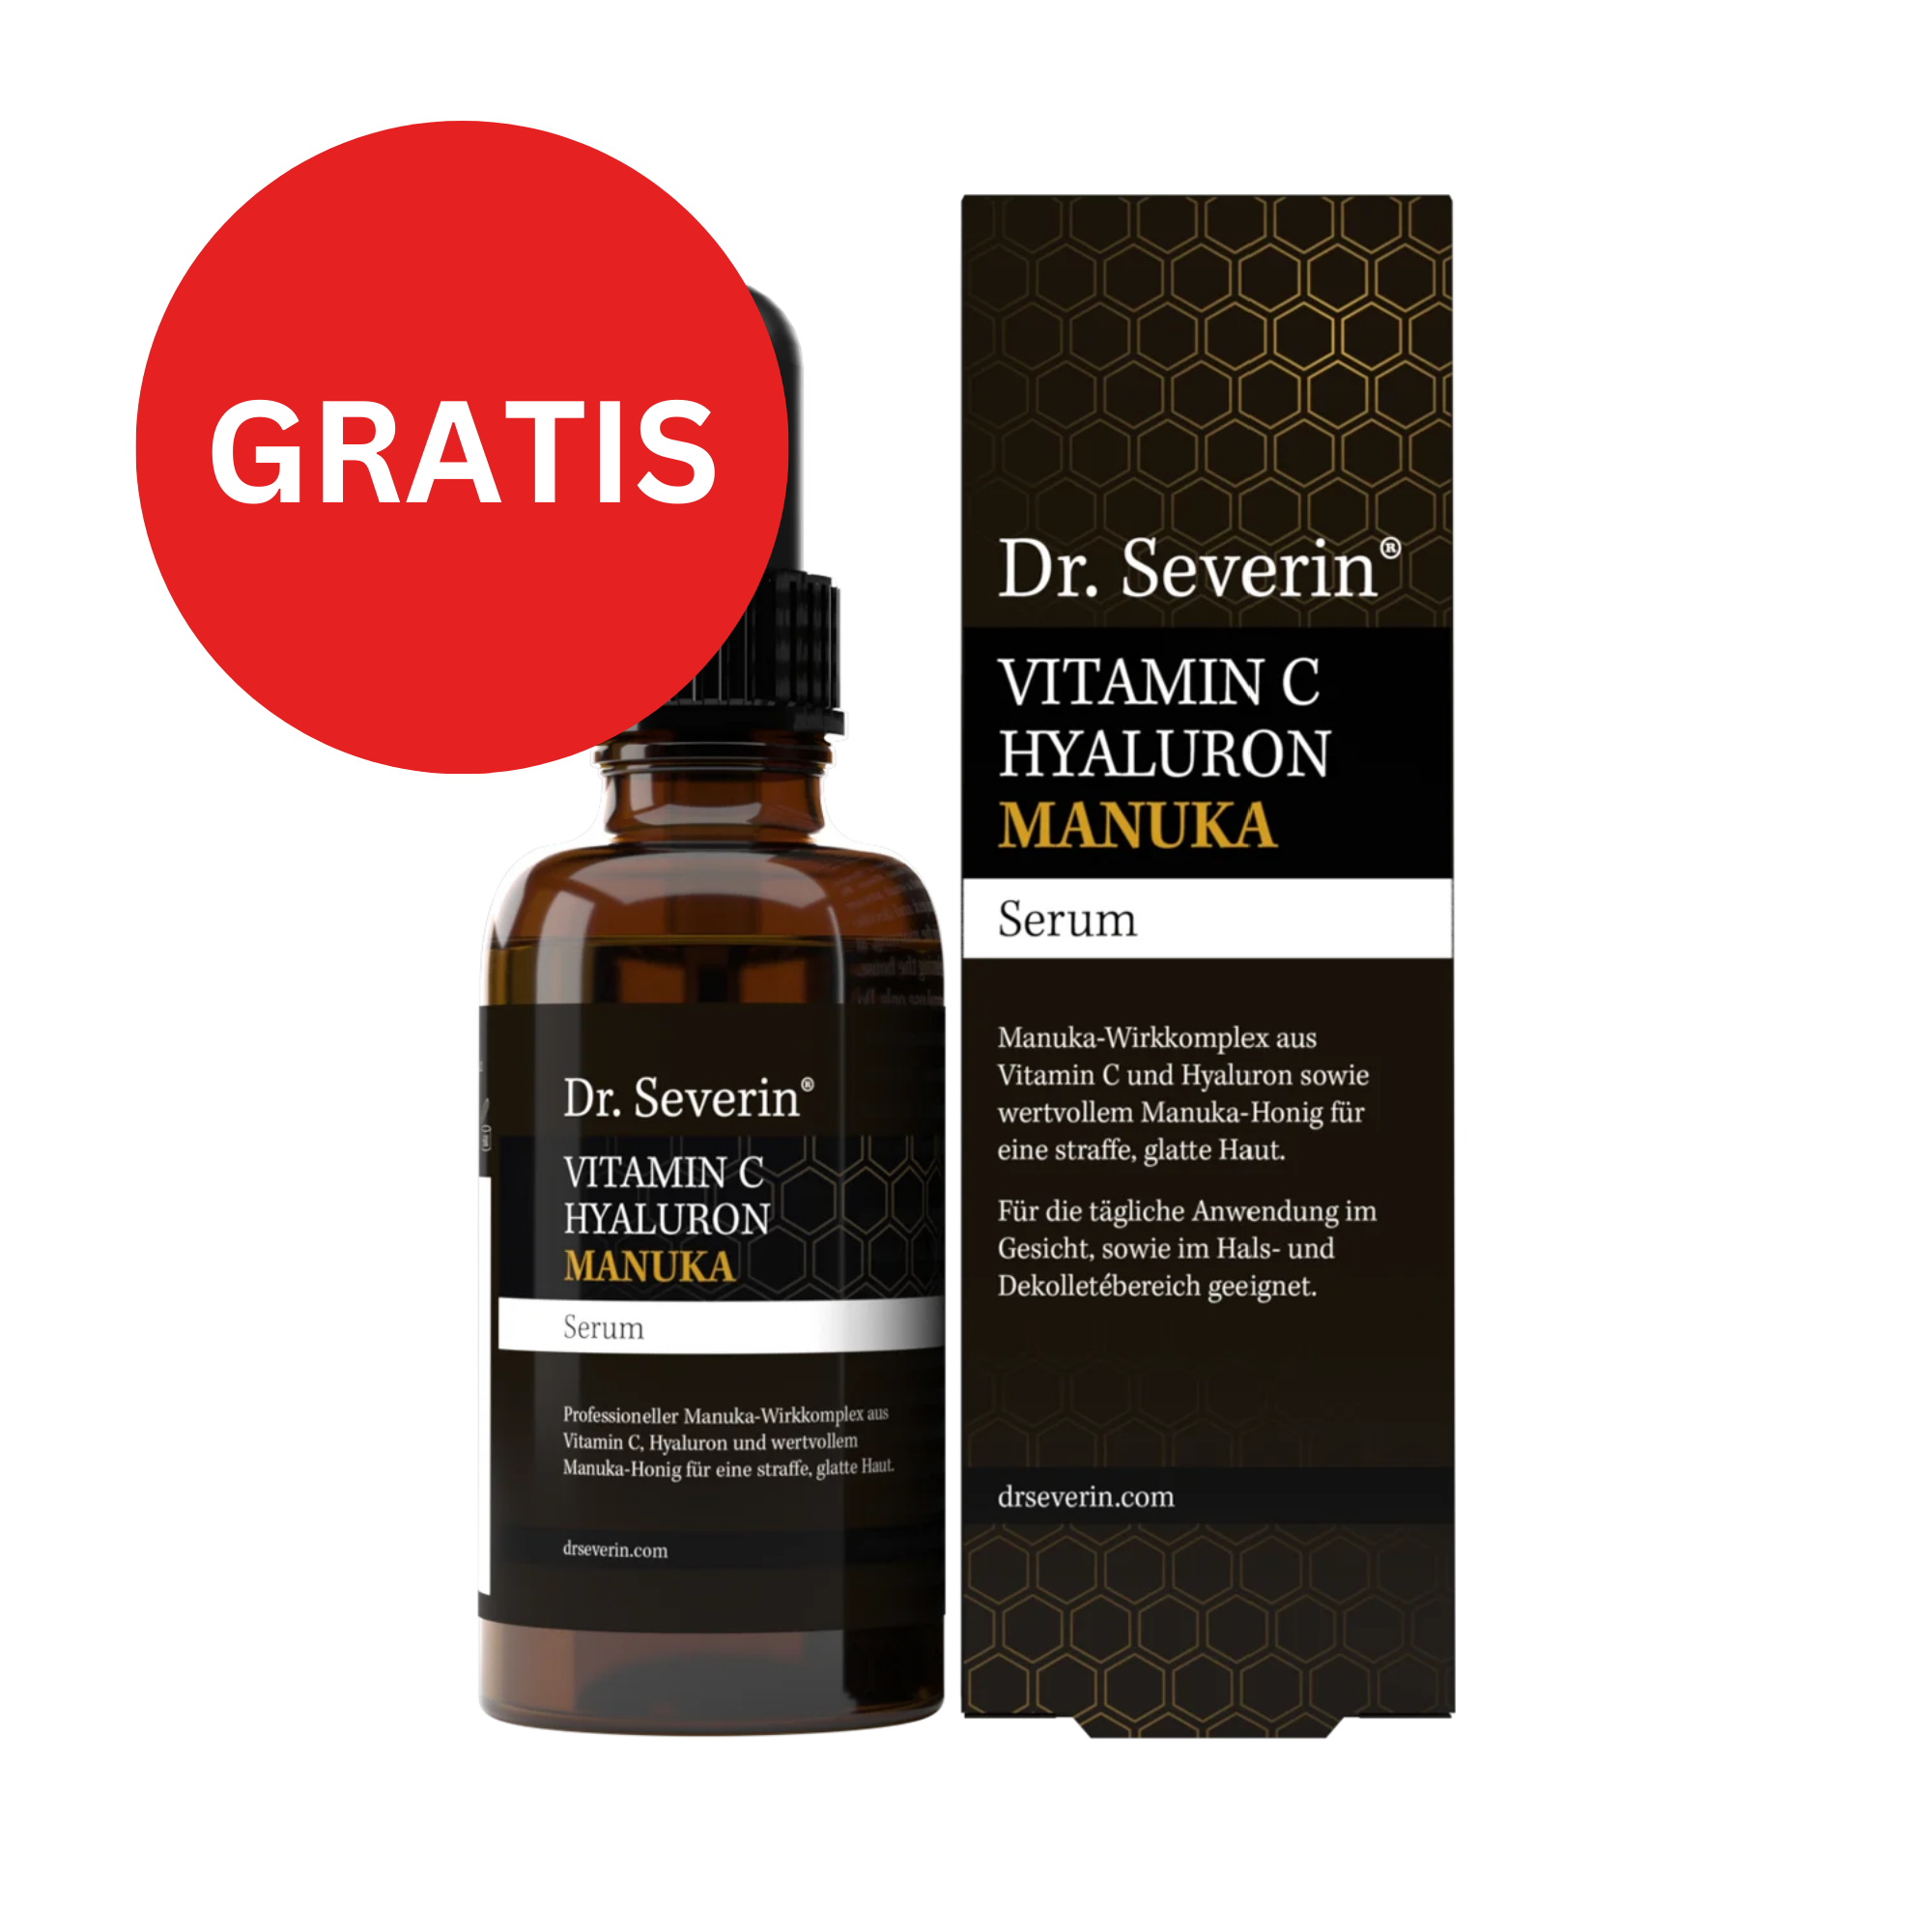 GRATIS Vitamin C Hyaluron Manuka Serum | 50 ml